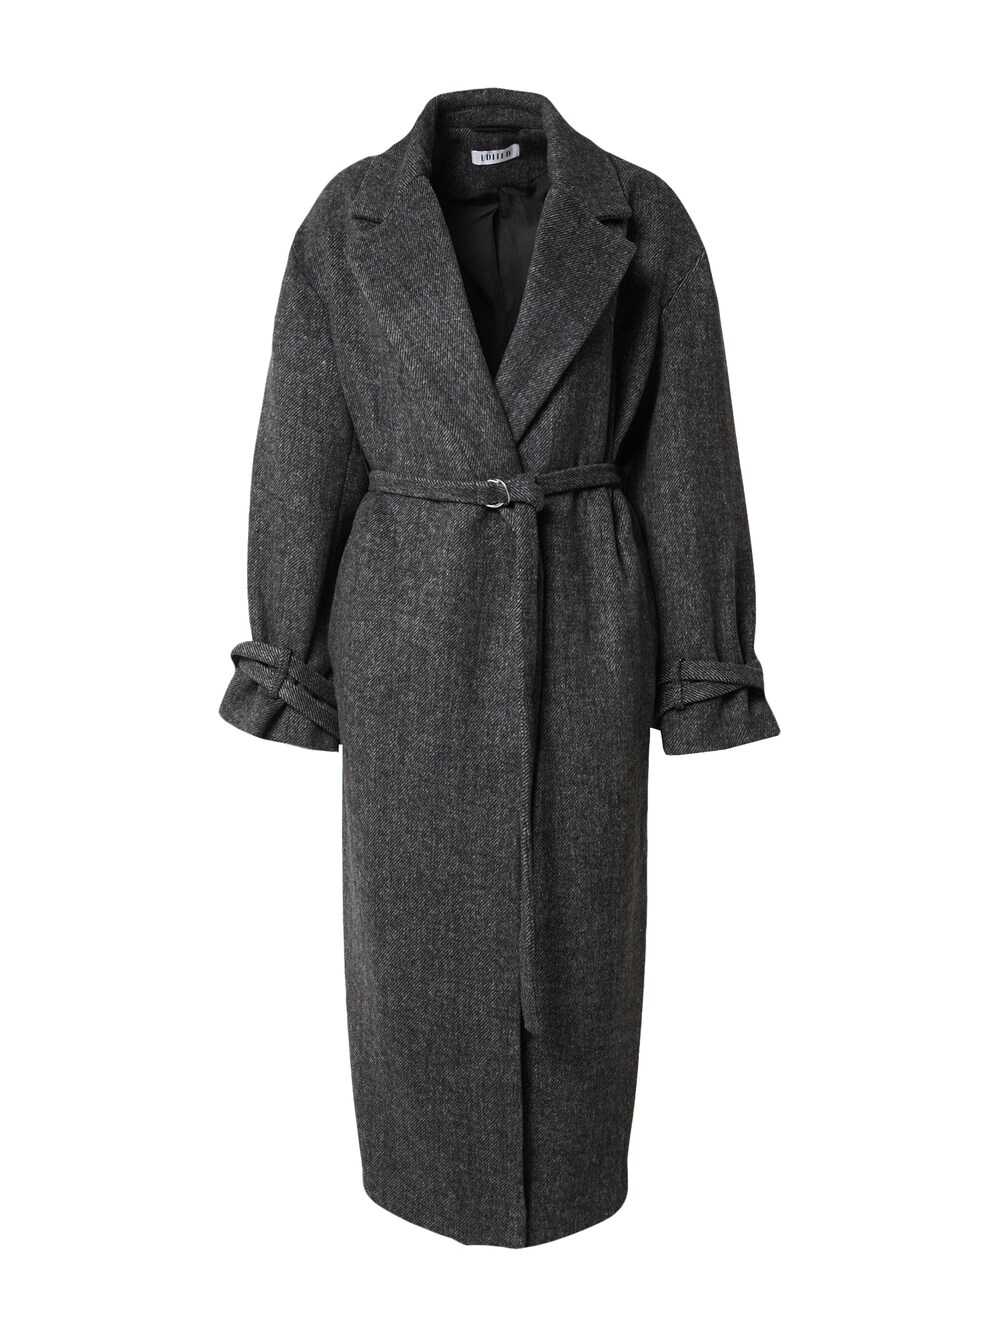 Межсезонное пальто EDITED Mareile, темно-серый межсезонное пальто edited ekaterina пестрый серый